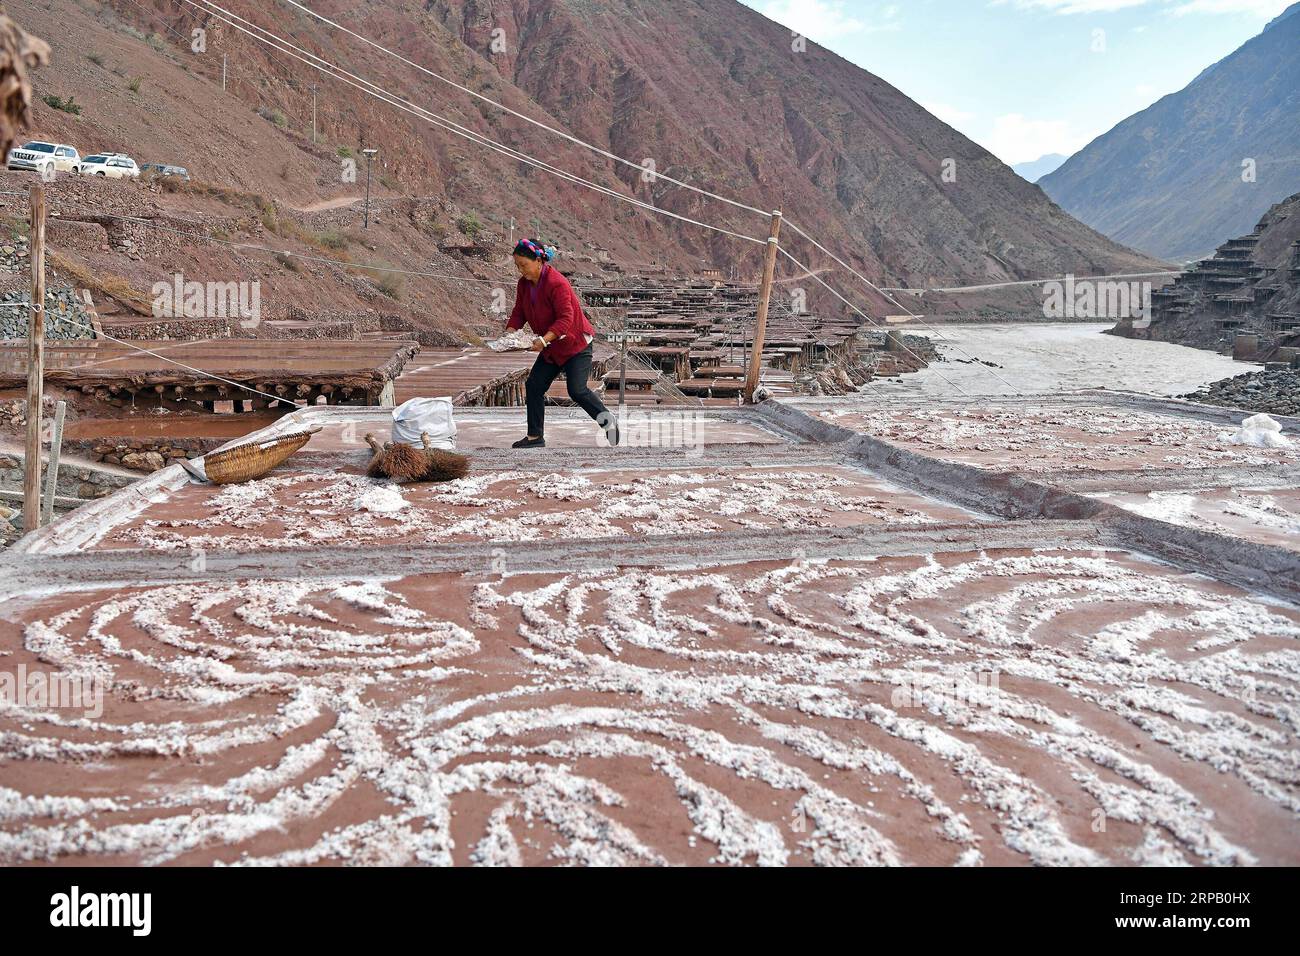 (190523) -- LHASSA, 23 mai 2019 (Xinhua) -- Un villageois recueille du sel dans un champ salin dans le comté de Mangkam, dans la région autonome du Tibet du Sud-Ouest de la Chine, le 22 mai 2019. Une ancienne technique de production de sel depuis la dynastie Tang (618-907) est bien conservée dans le comté de Mangkam. Les populations locales suivent une méthode de récolte du sel en recueillant les saumures des mines de sel et des étangs et en les évaporant au soleil jusqu'à cristallisation. (Xinhua/Li Xin) CHINE-TIBET-MANGKAM-PRODUCTION DE SEL (CN) PUBLICATIONxNOTxINxCHN Banque D'Images